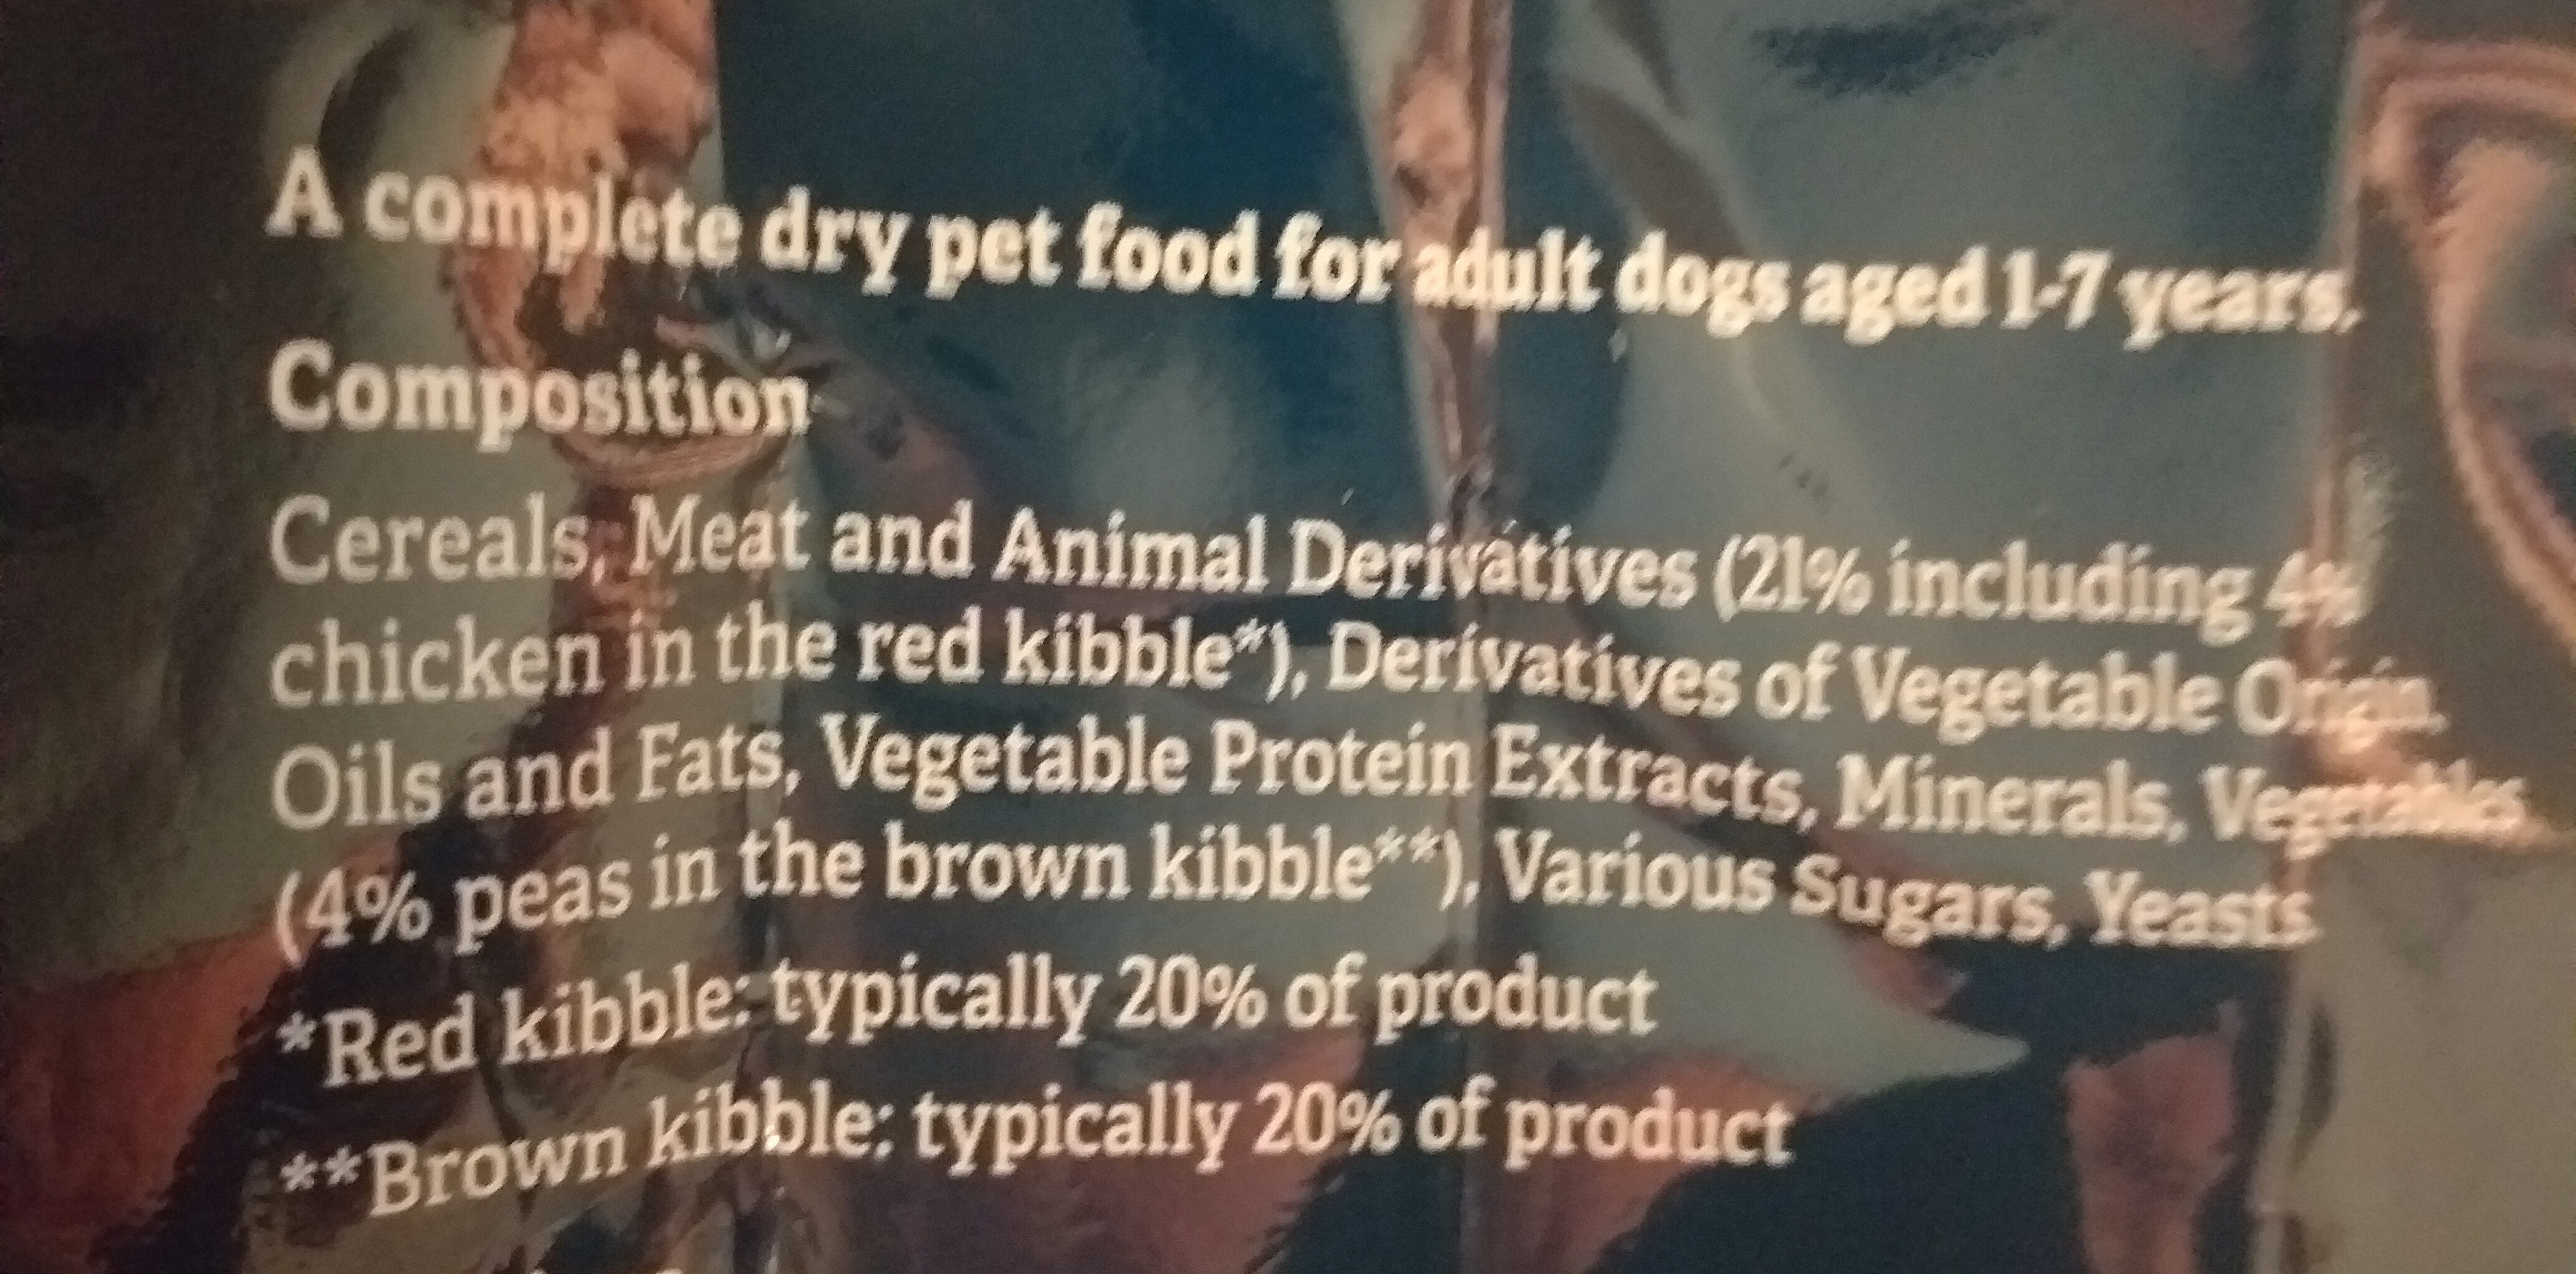 Tesco complete dry food adult dog - Ingredients - en